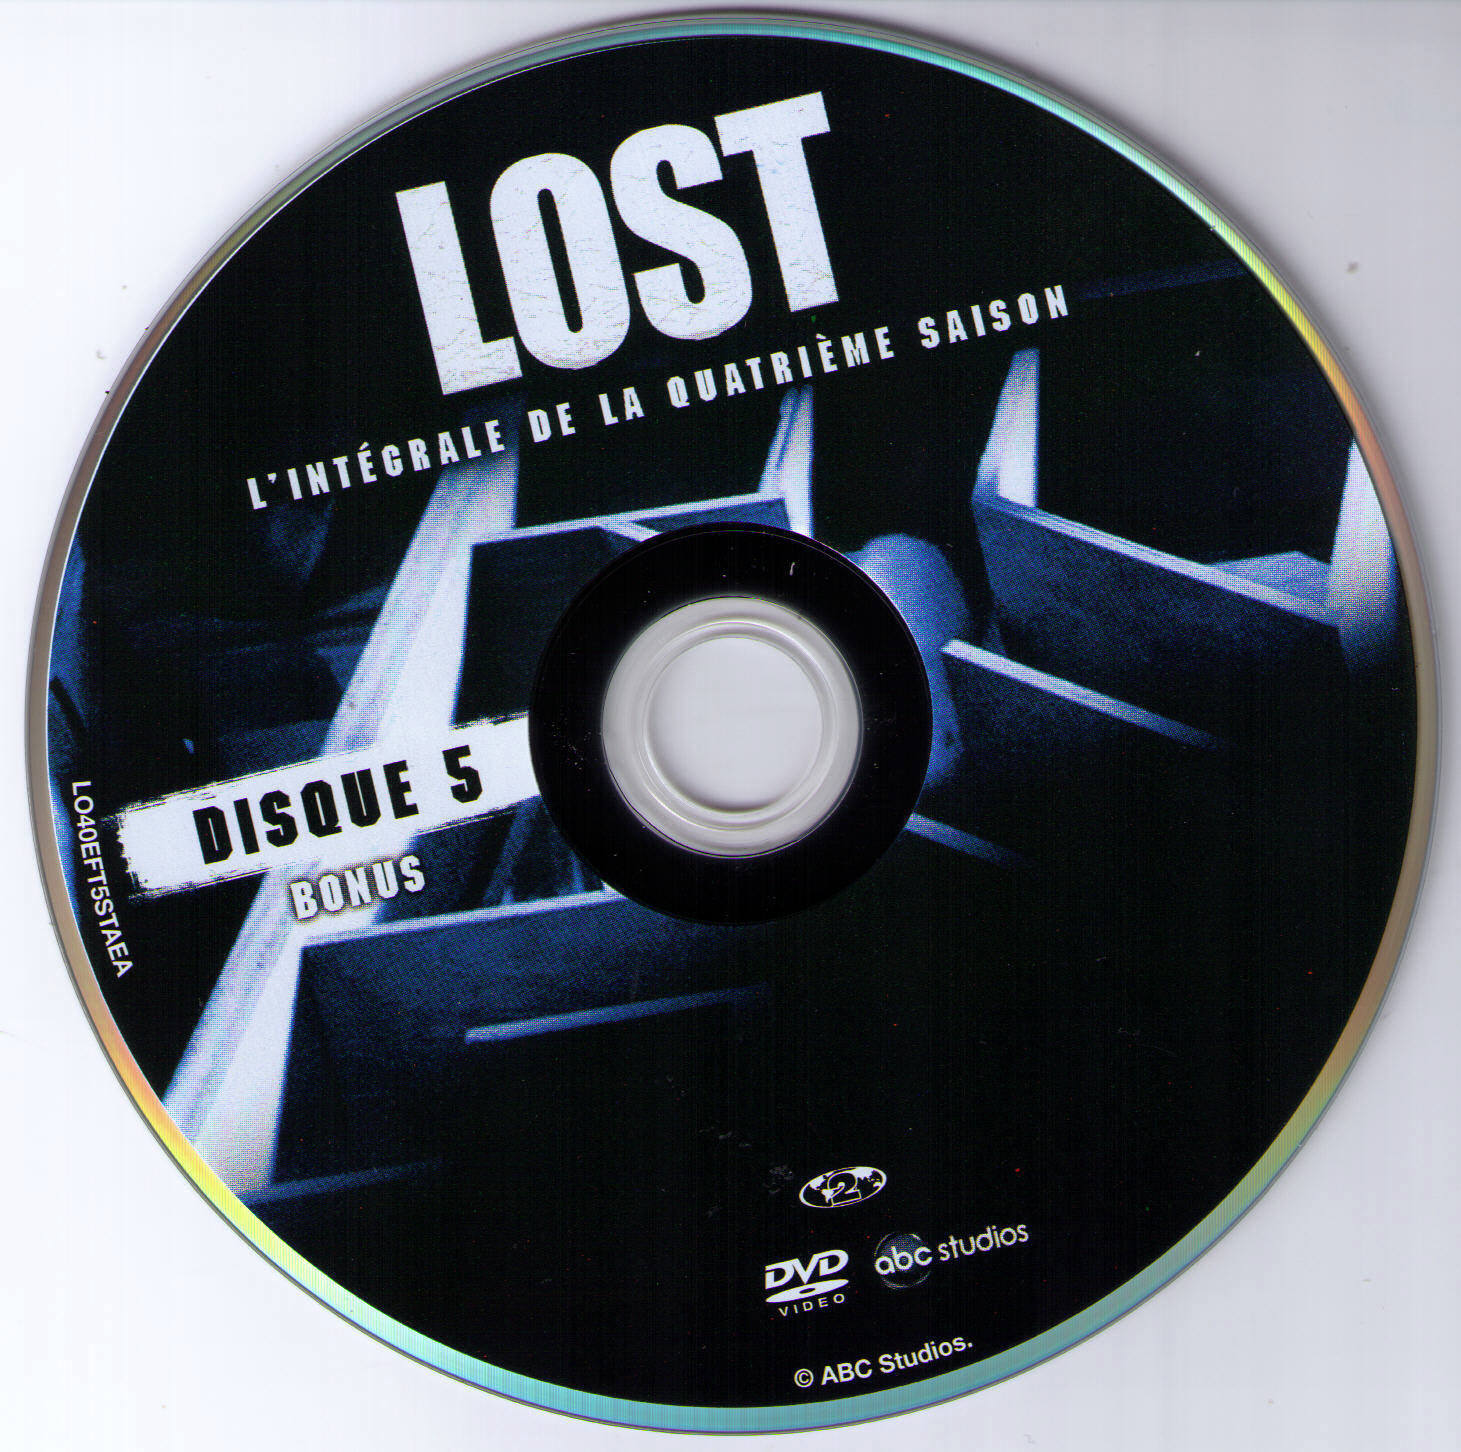 Lost Saison 4 DISC 5